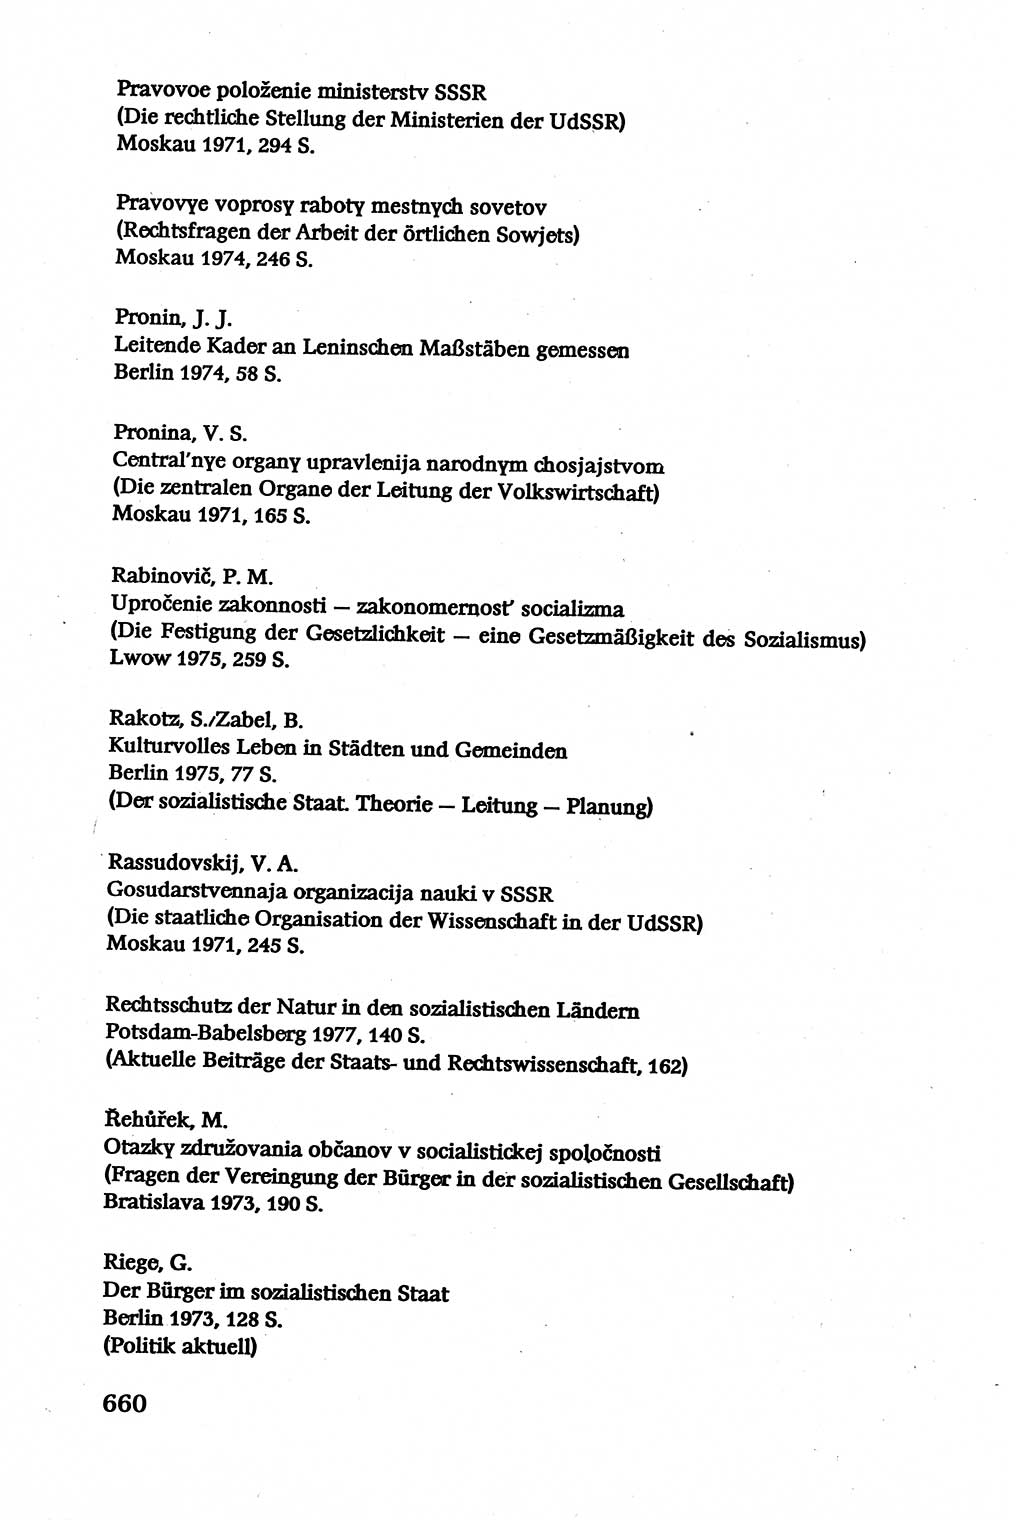 Verwaltungsrecht [Deutsche Demokratische Republik (DDR)], Lehrbuch 1979, Seite 660 (Verw.-R. DDR Lb. 1979, S. 660)